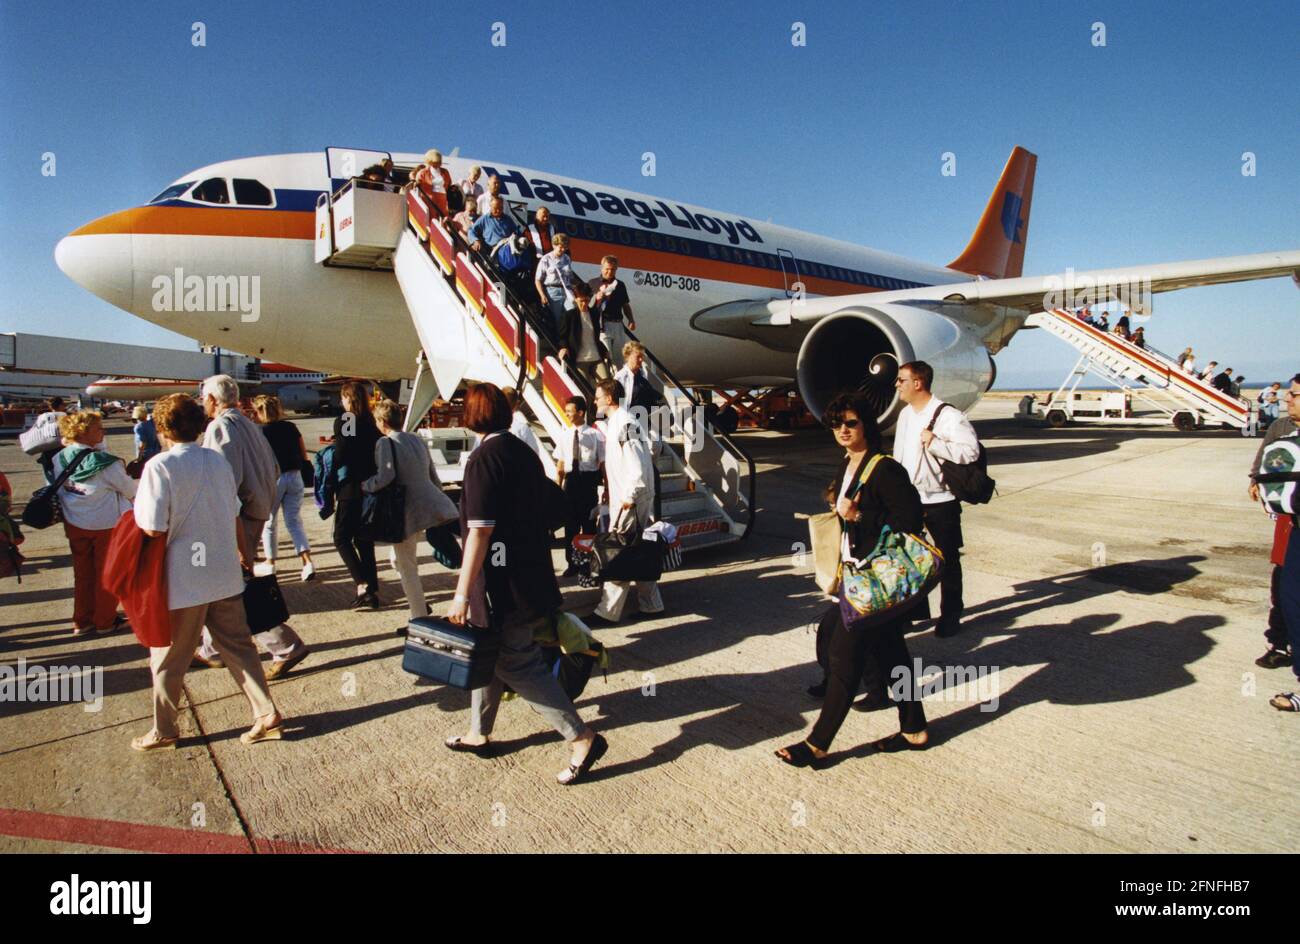 Ankunft eines Flugzeugs der Fluggesellschaft Hapag-Lloyd Flug am Flughafen  Puerto del Rosario, Fuerteventura. Passagiere verlassen den Airbus A310-308  über eine Treppe. [Automatisierte Übersetzung] Stockfotografie - Alamy